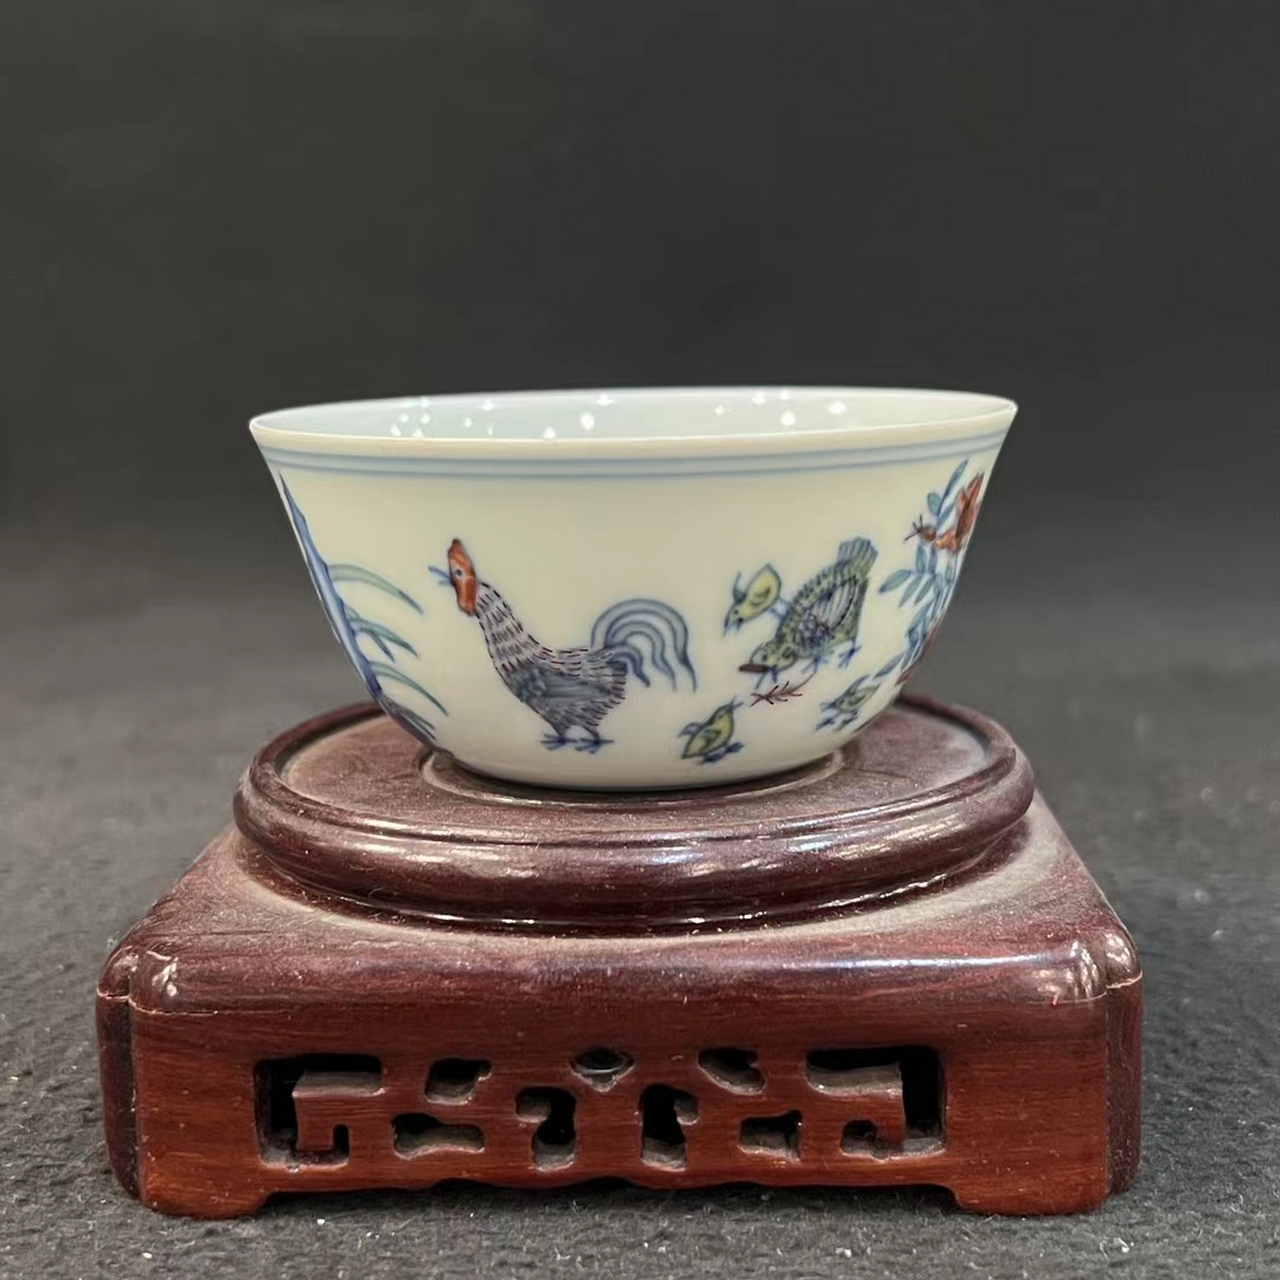 明成化斗彩鸡缸杯精品 成化斗彩鸡缸杯是汉族传统陶瓷中的艺术珍品